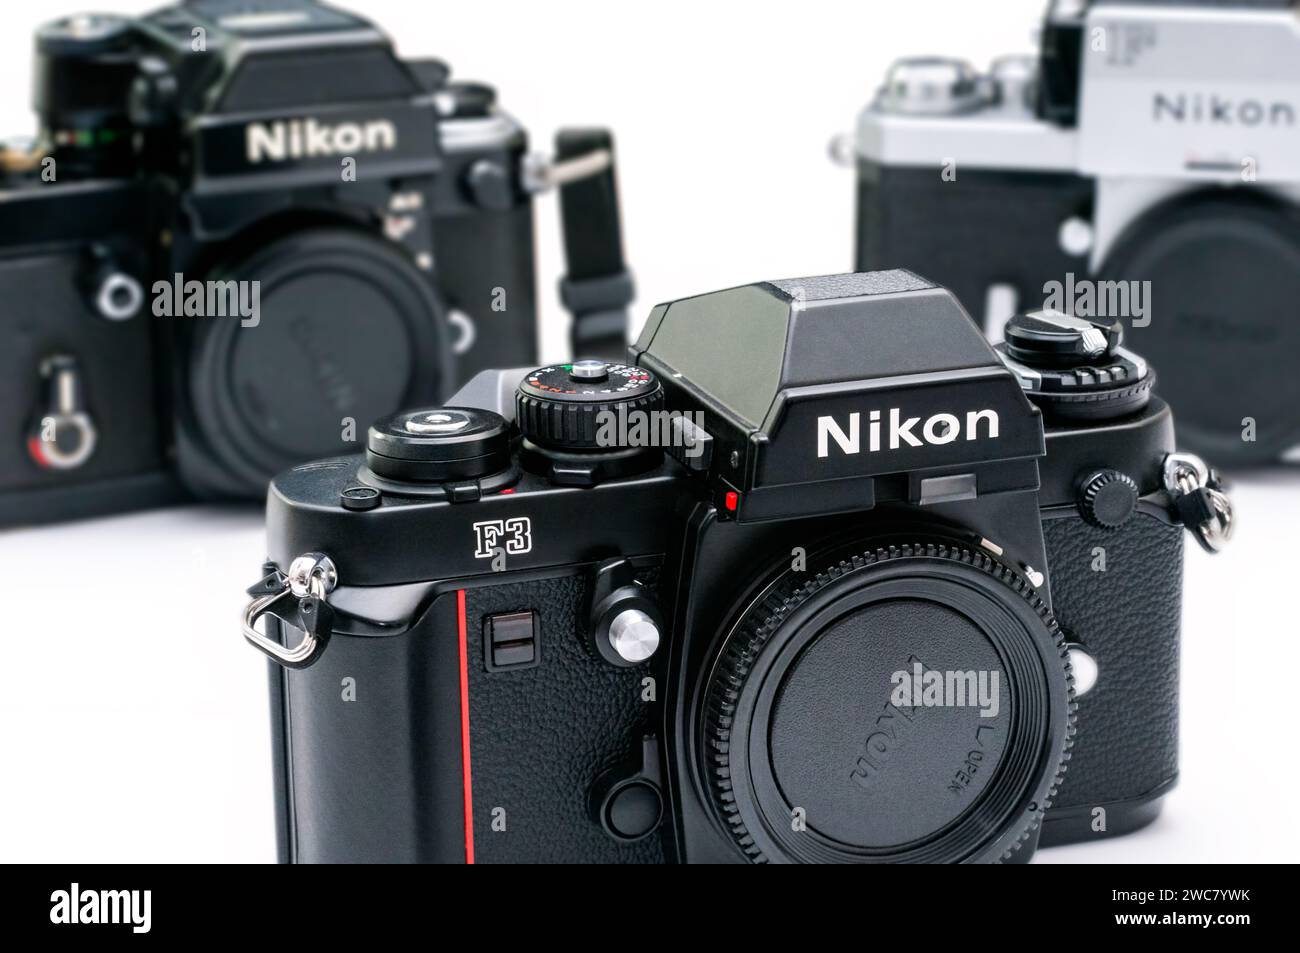 Le boîtier emblématique Nikon F3 flanqué des Nikon F et F2 Classics, un hommage à l'héritage durable de l'évolution de l'appareil photo Nikon. Banque D'Images